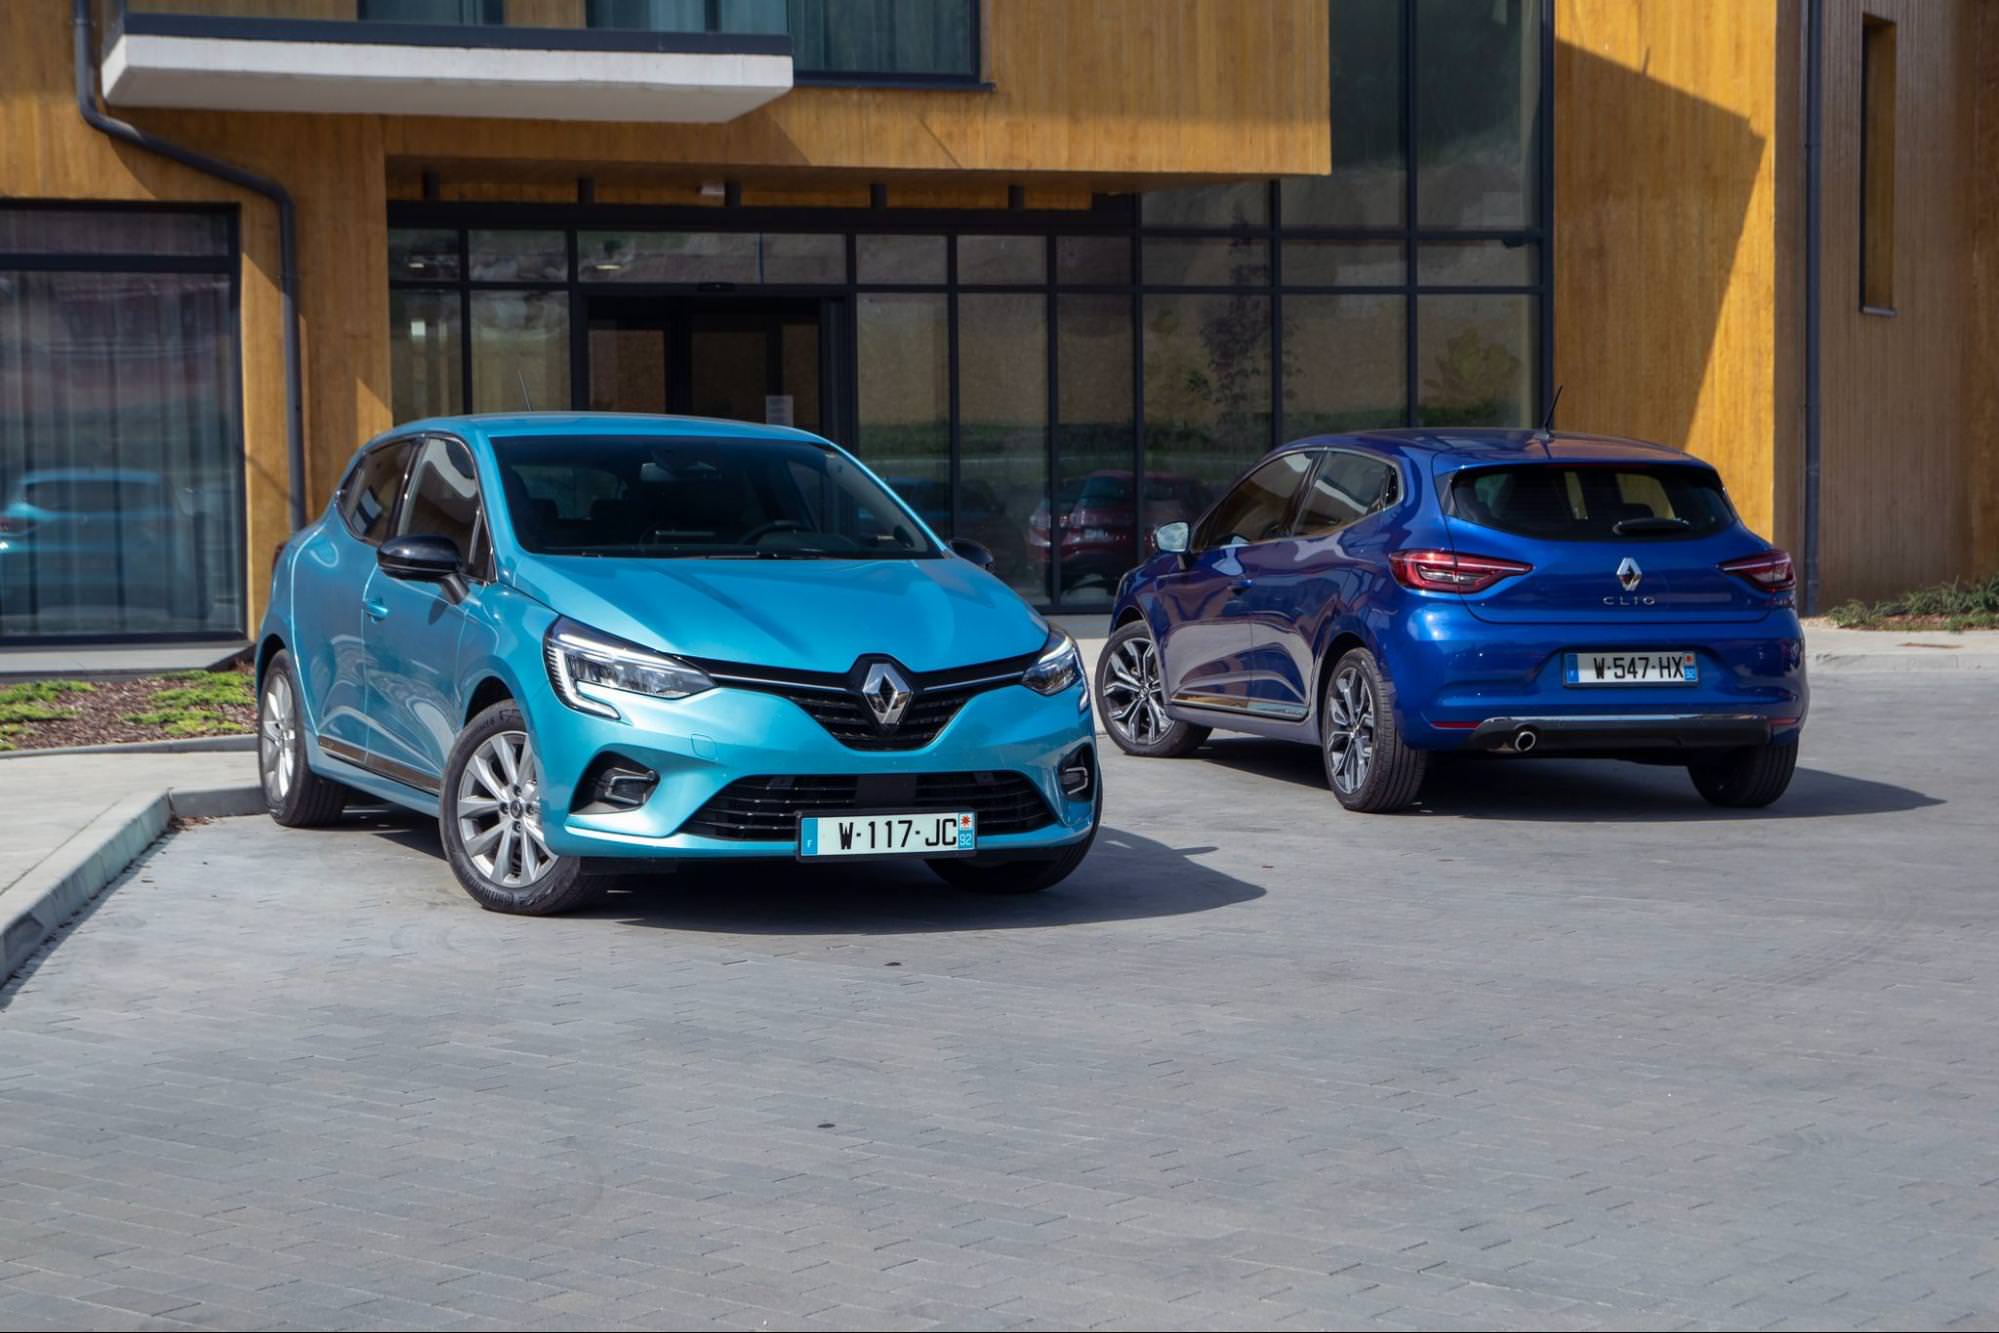 Světle modrý Renault Clio a tmavě modrý Renault Clio zaparkované před budovou, kde jsou vystaveny oblíbené francouzské modely aut